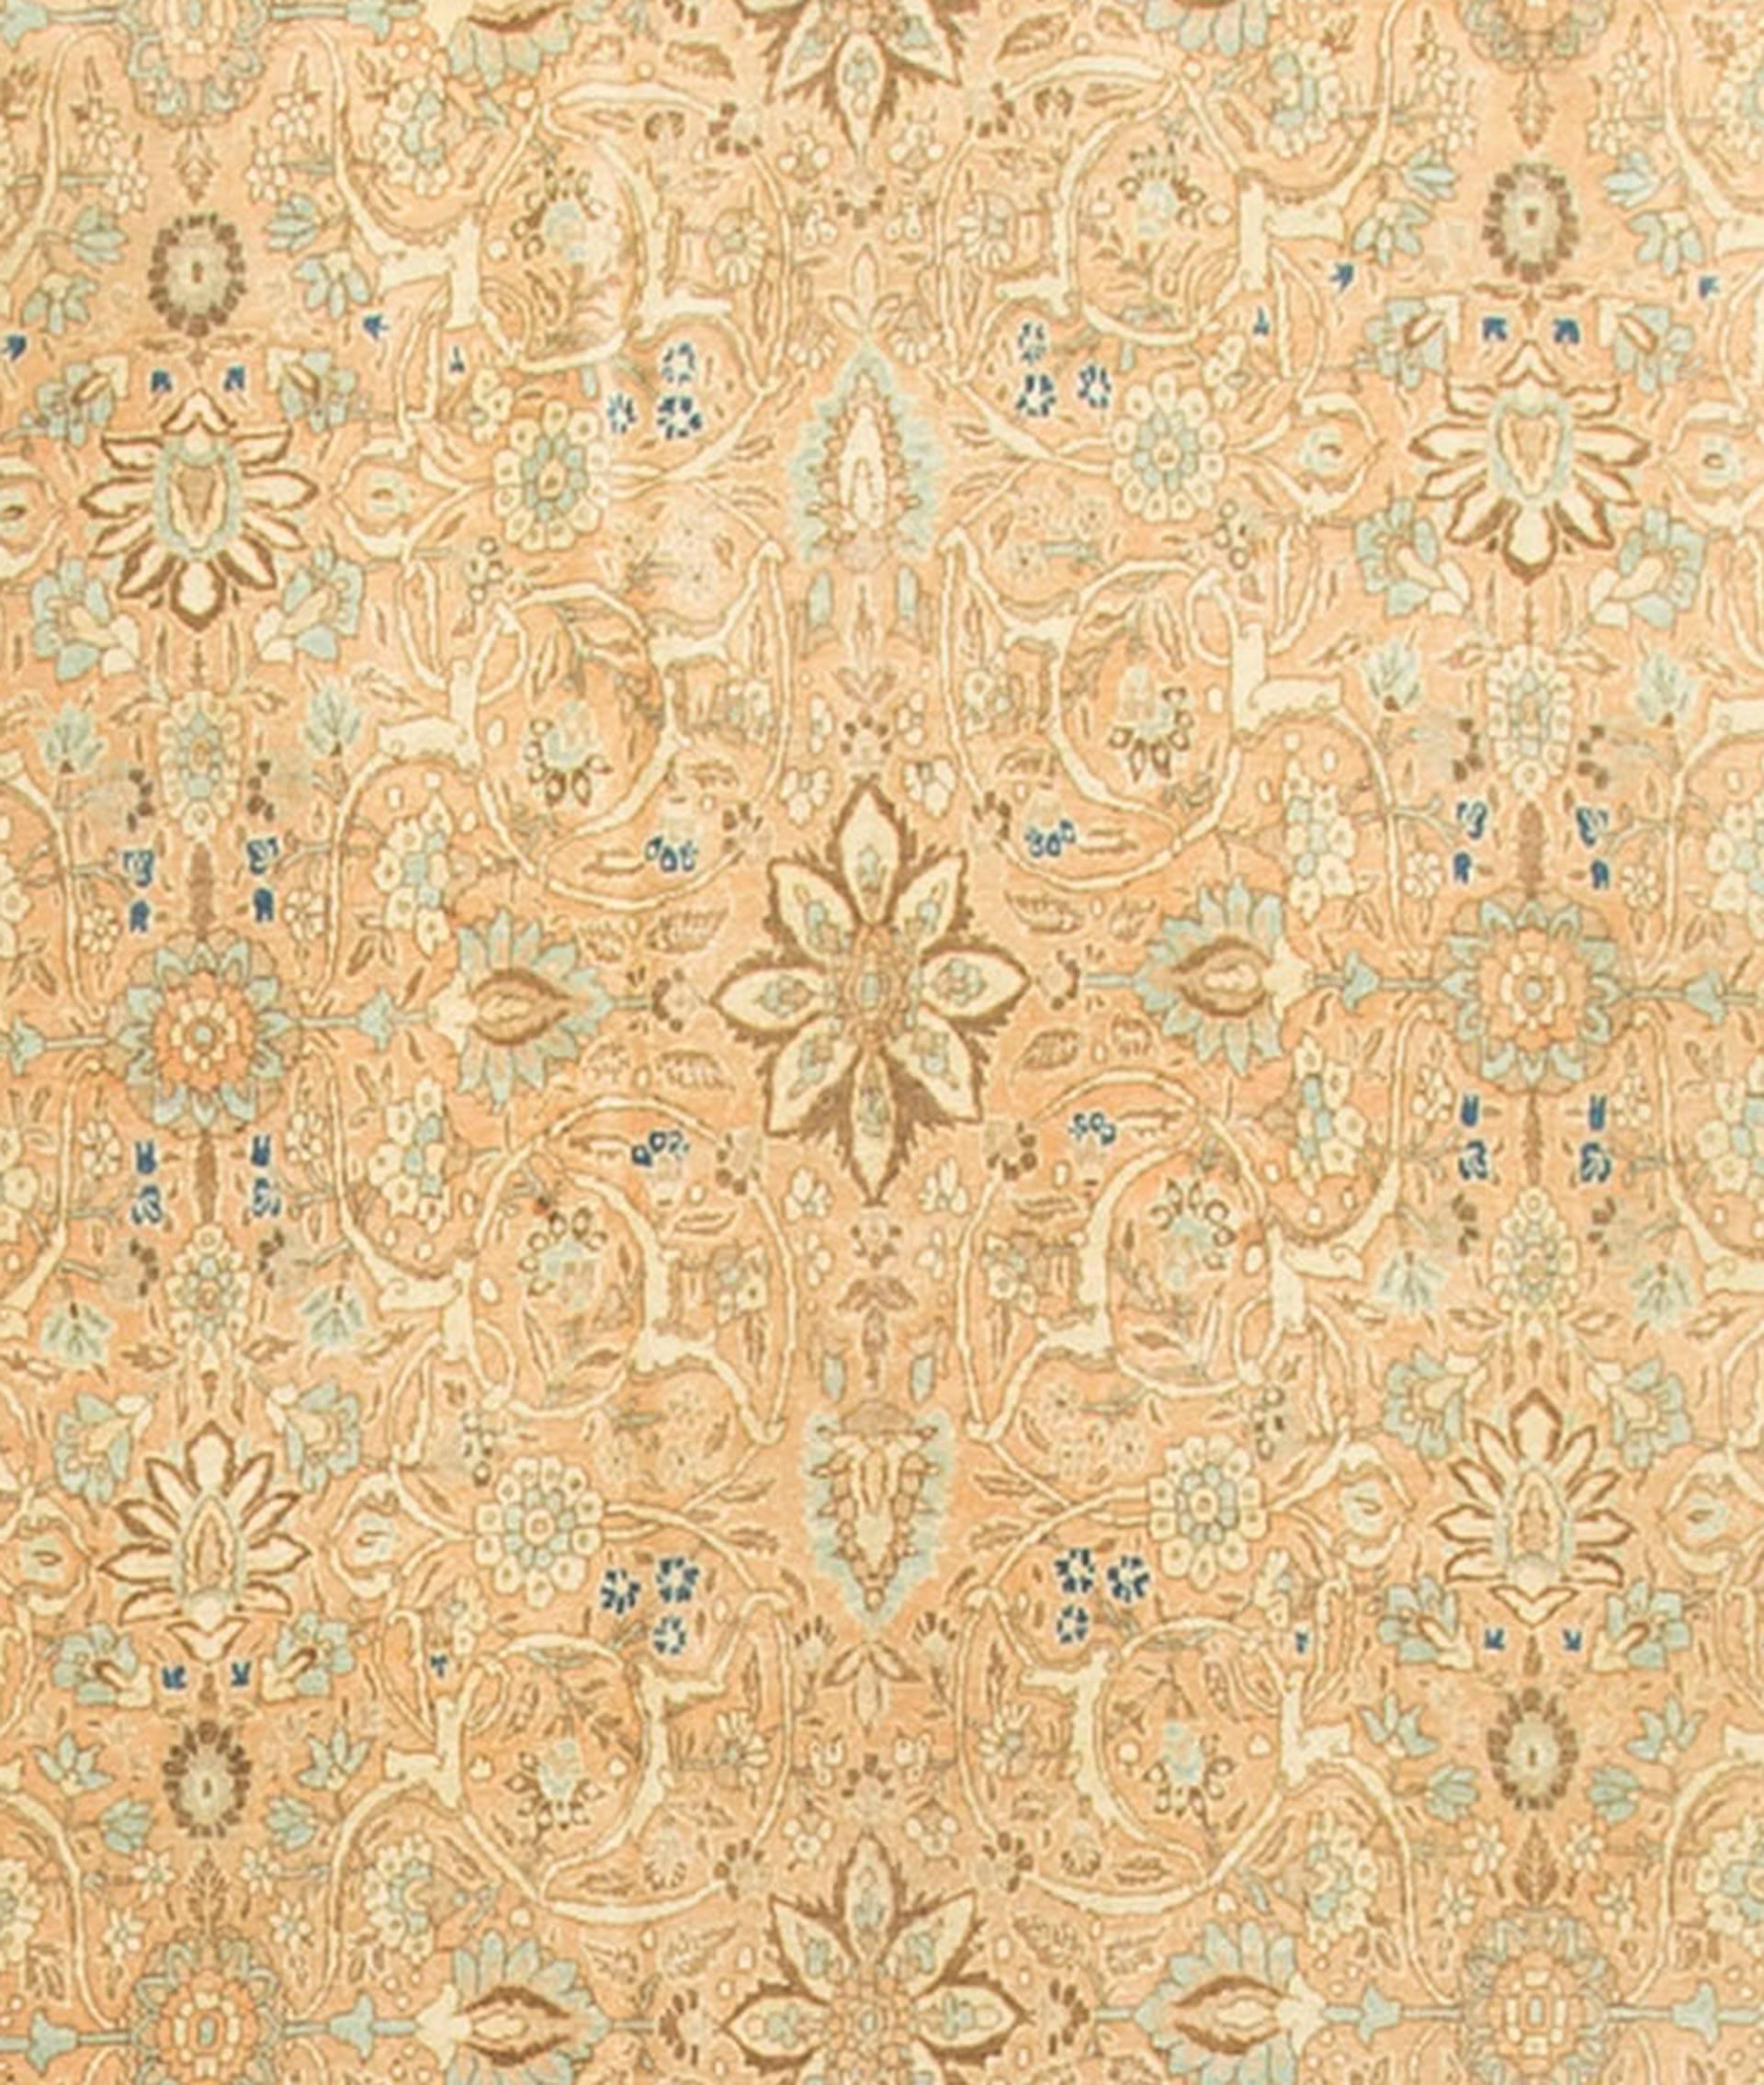 Tapis persan antique Tabriz Circa 1900. Ce tapis à l'aspect doux et tendre possède une merveilleuse patine qui ne vient qu'avec l'âge. Les couleurs douces du fond et de la bordure, complétées par des motifs floraux, donnent à ce tapis une impression